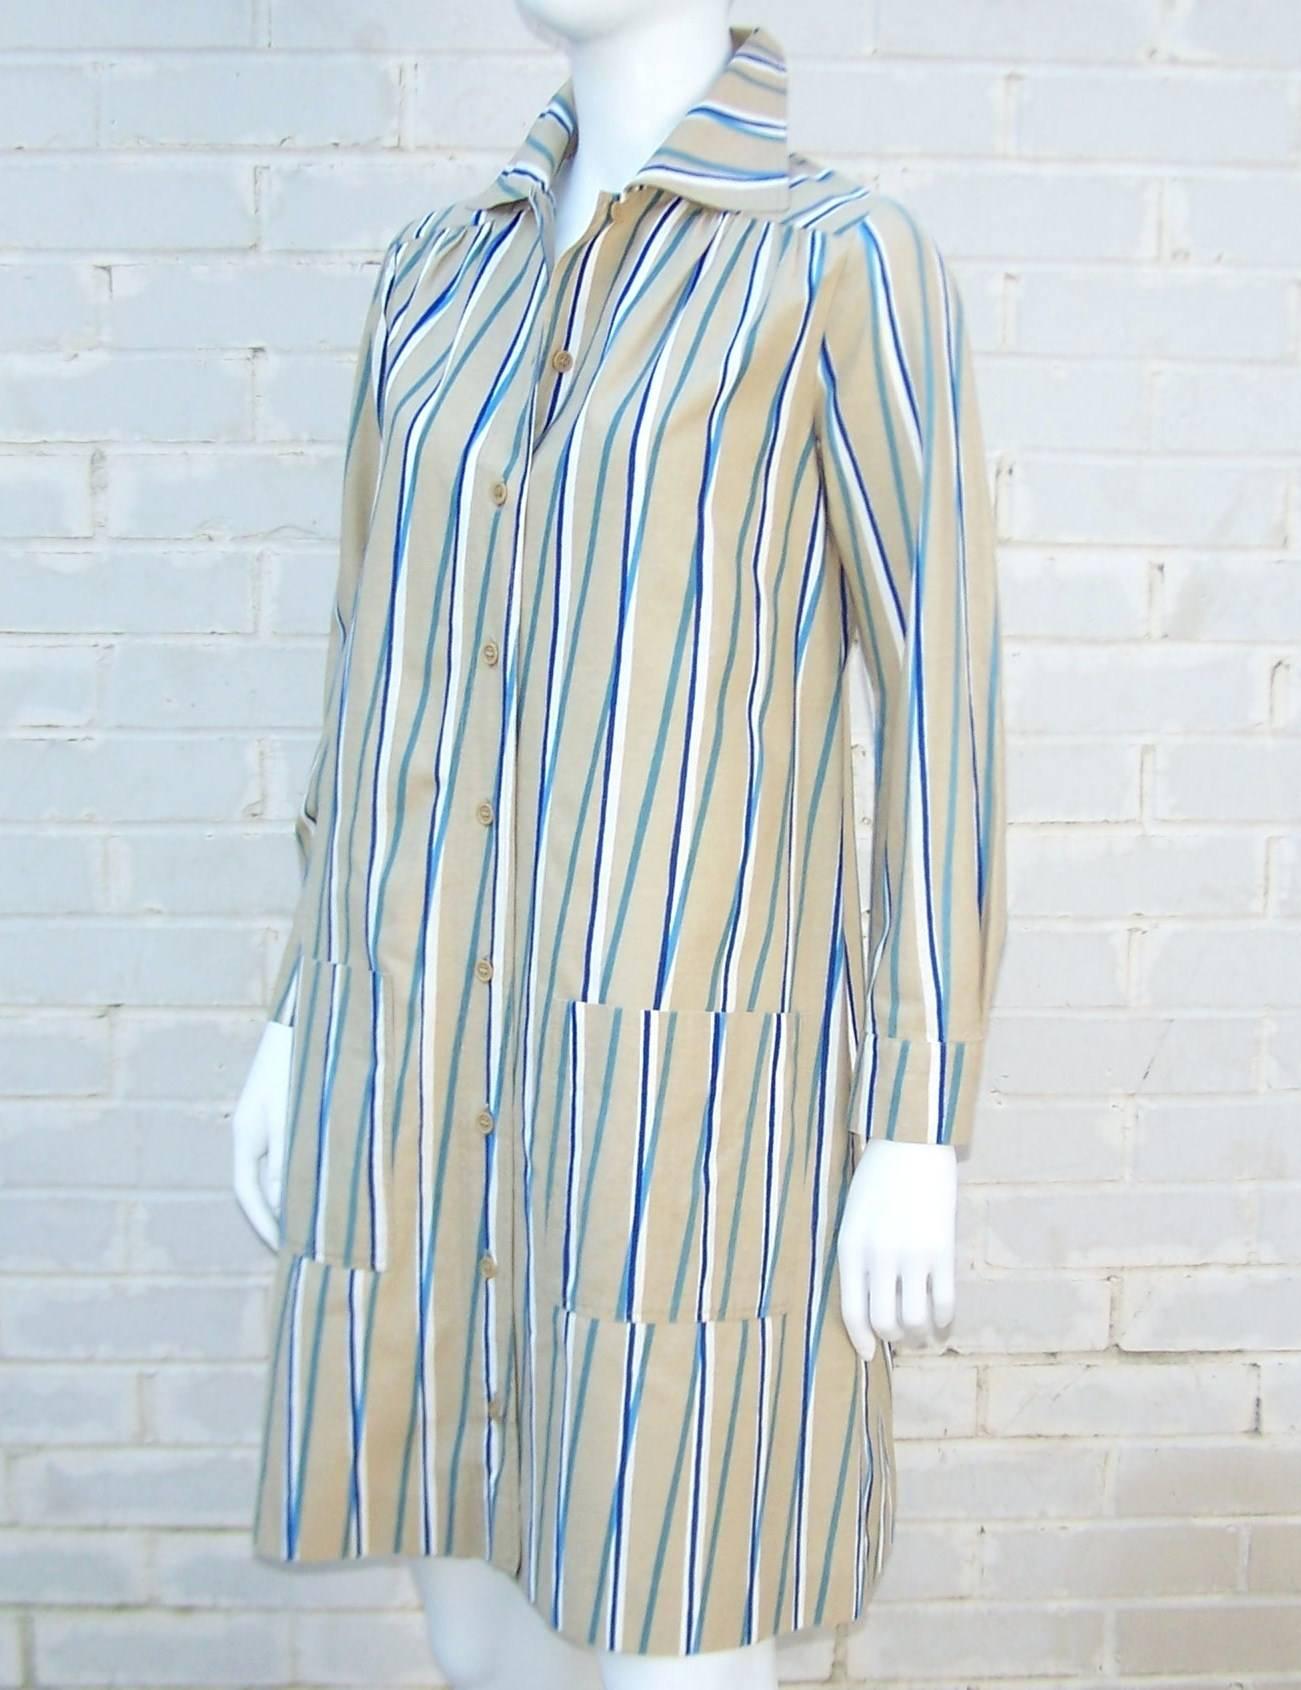 Gray 1970s Marimekko of Finland Graphic Op Art Striped Cotton Shirt Dress